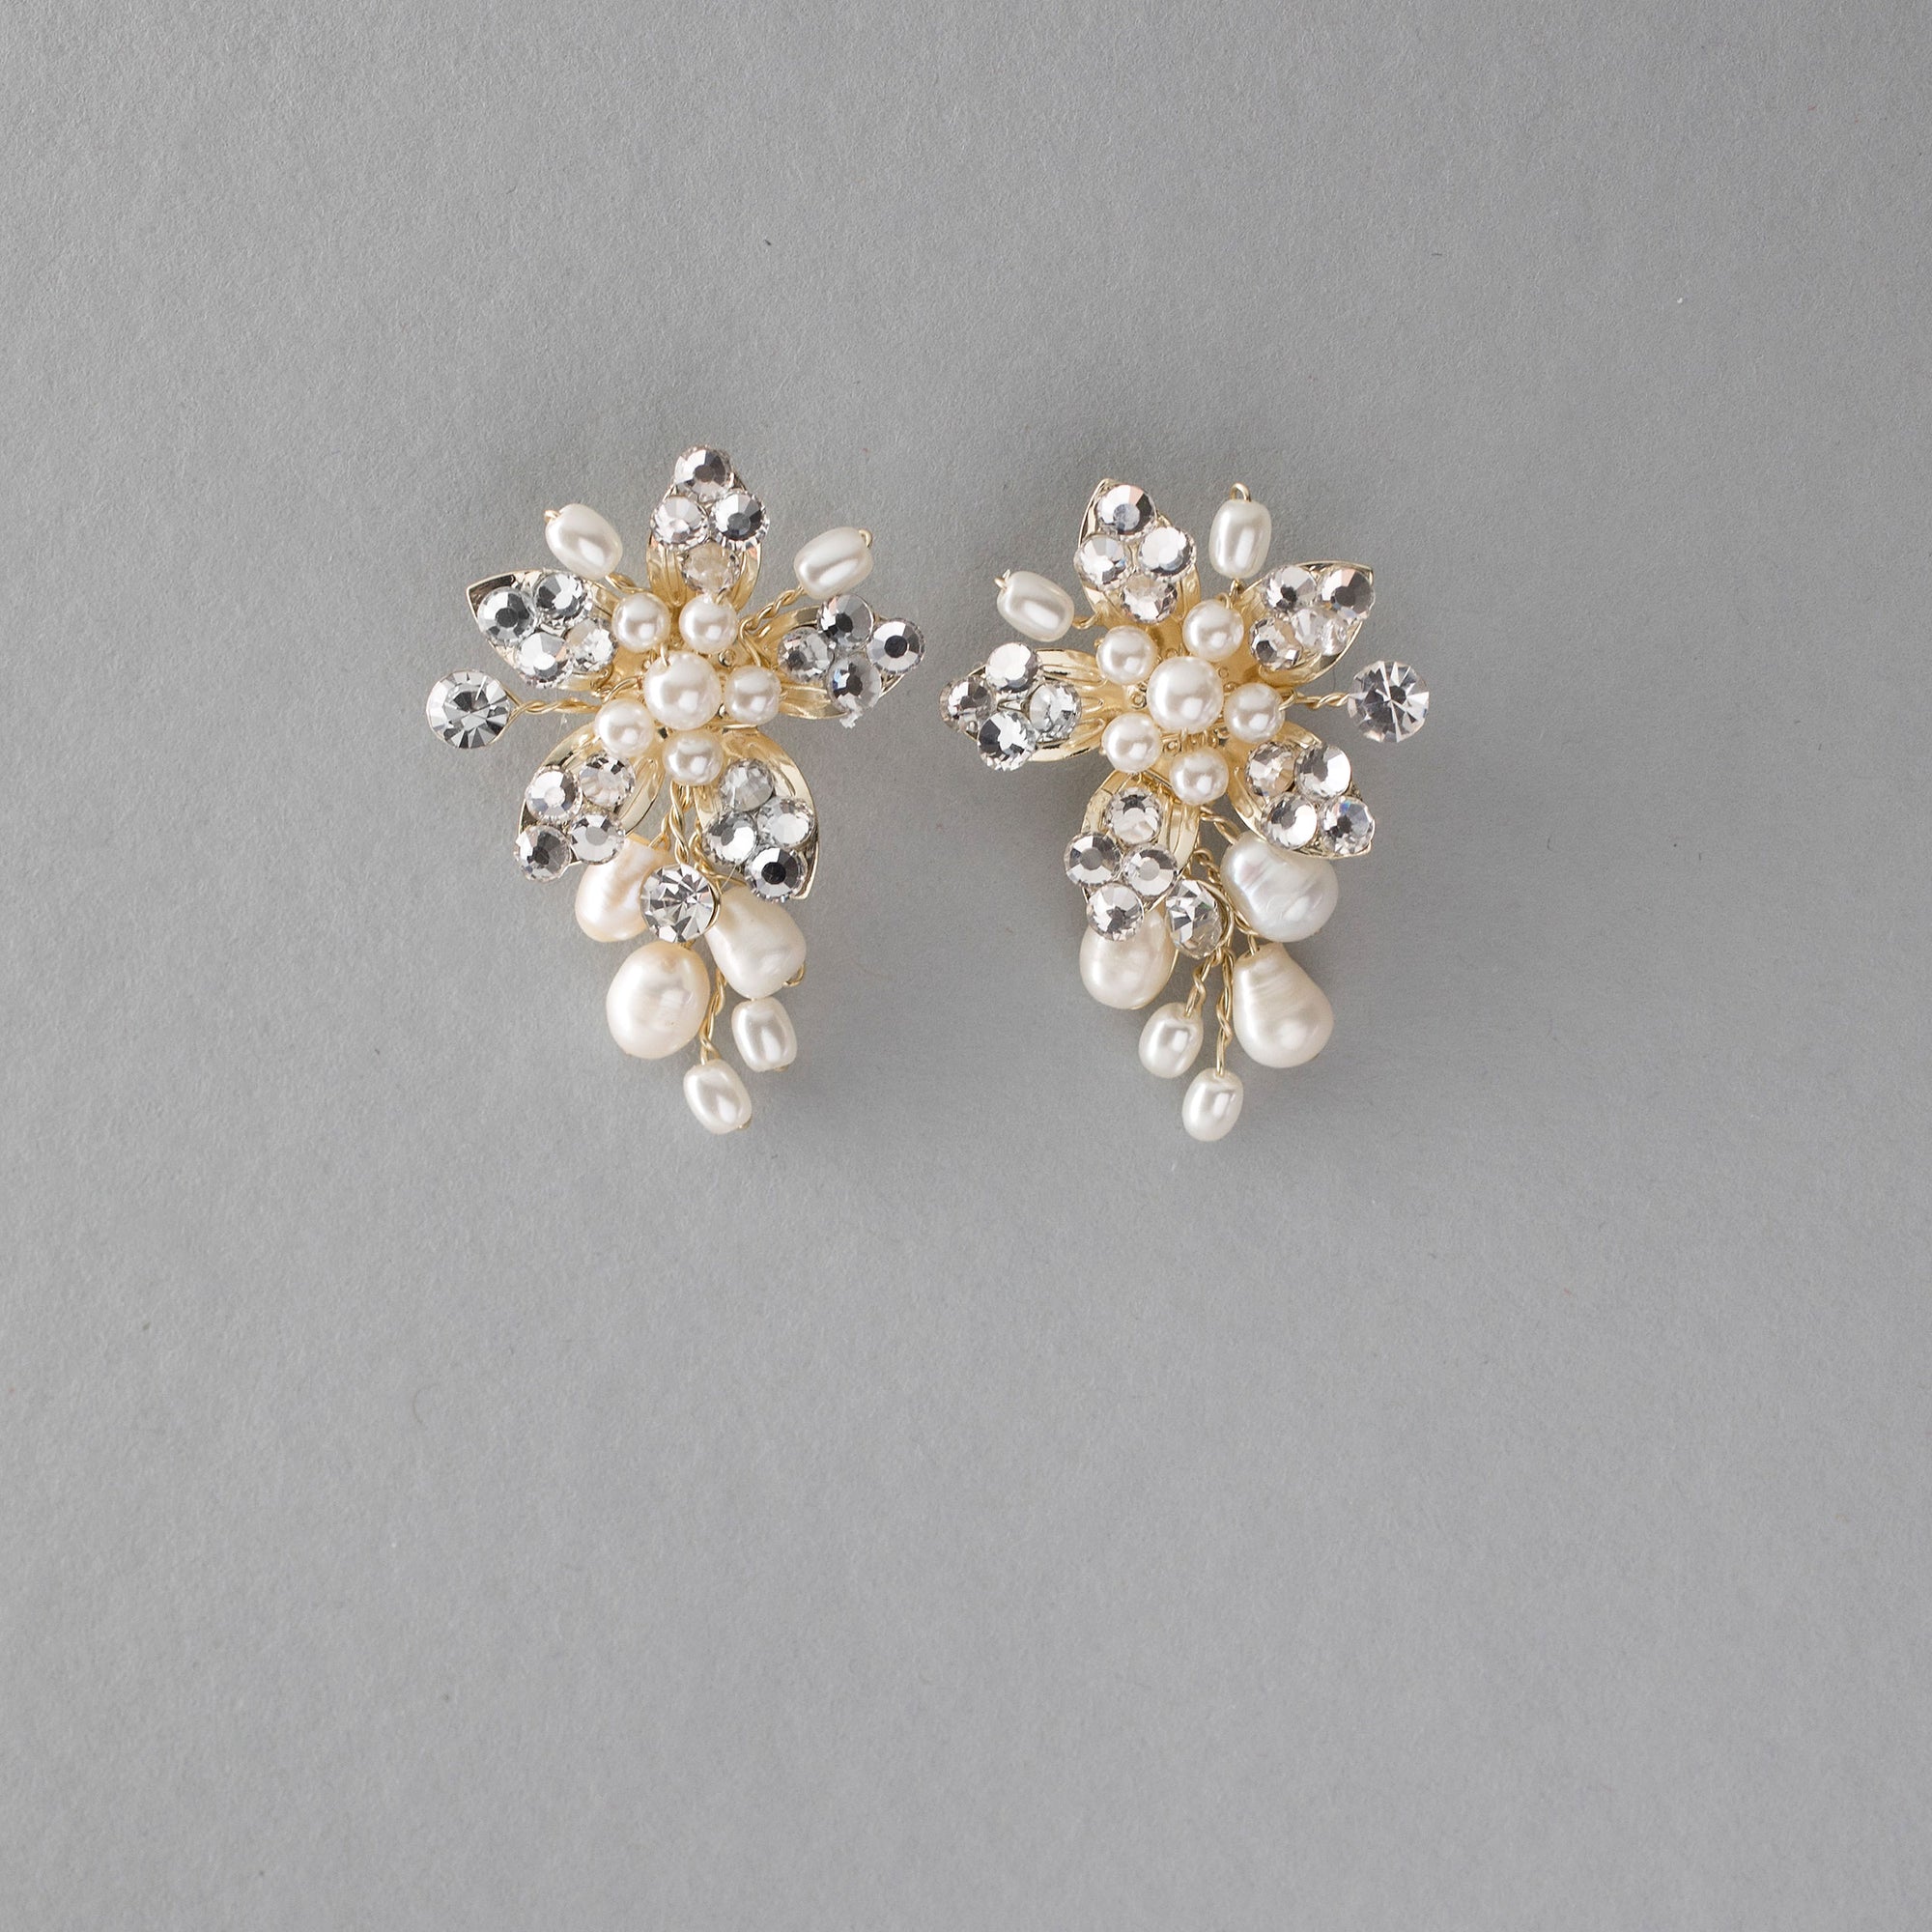 Handmade Freshwater Pearl Flower Earrings Ligth Gold - Cassandra Lynne